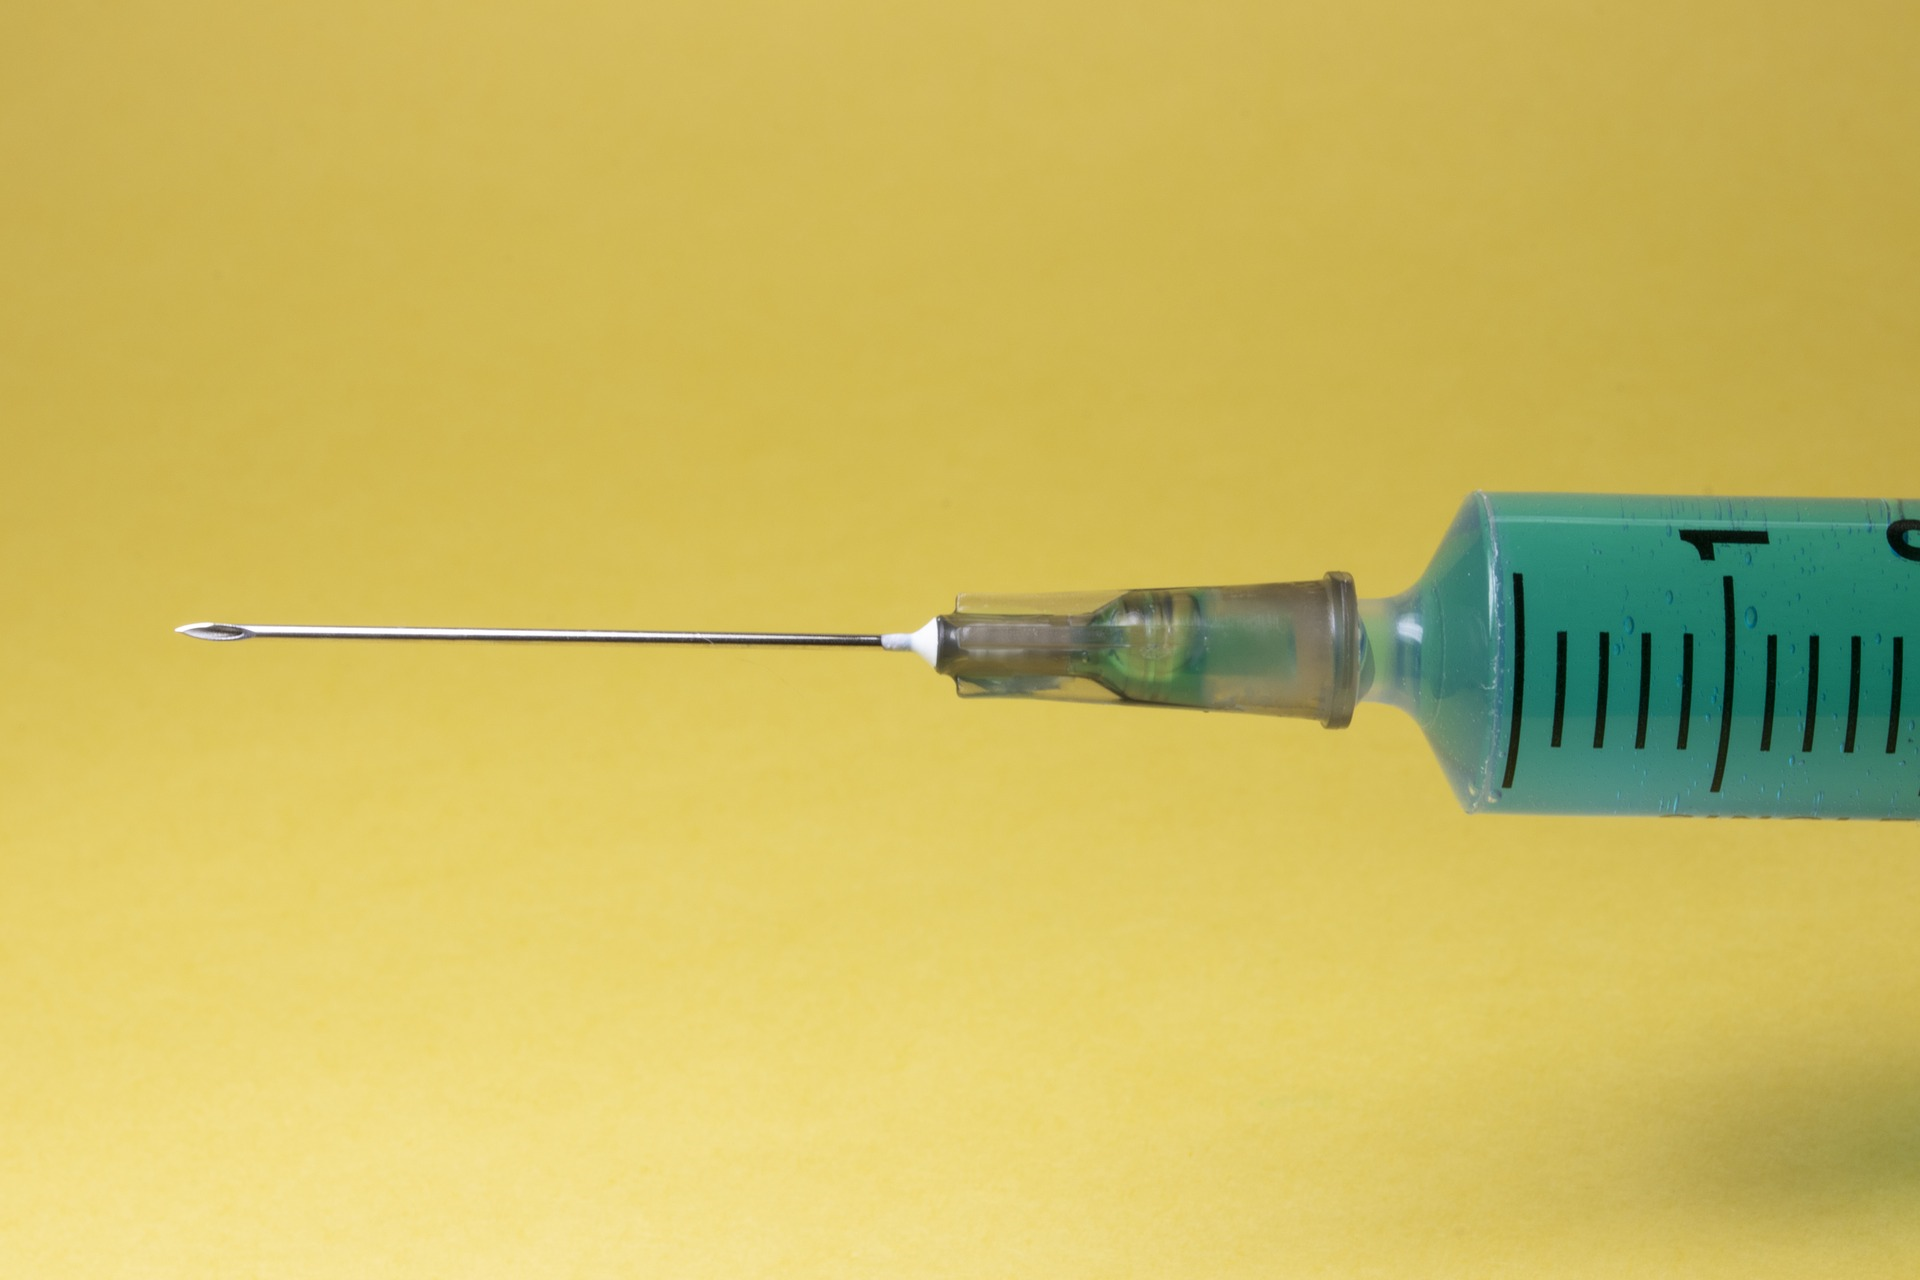 湖浆inge and needle for administering injections